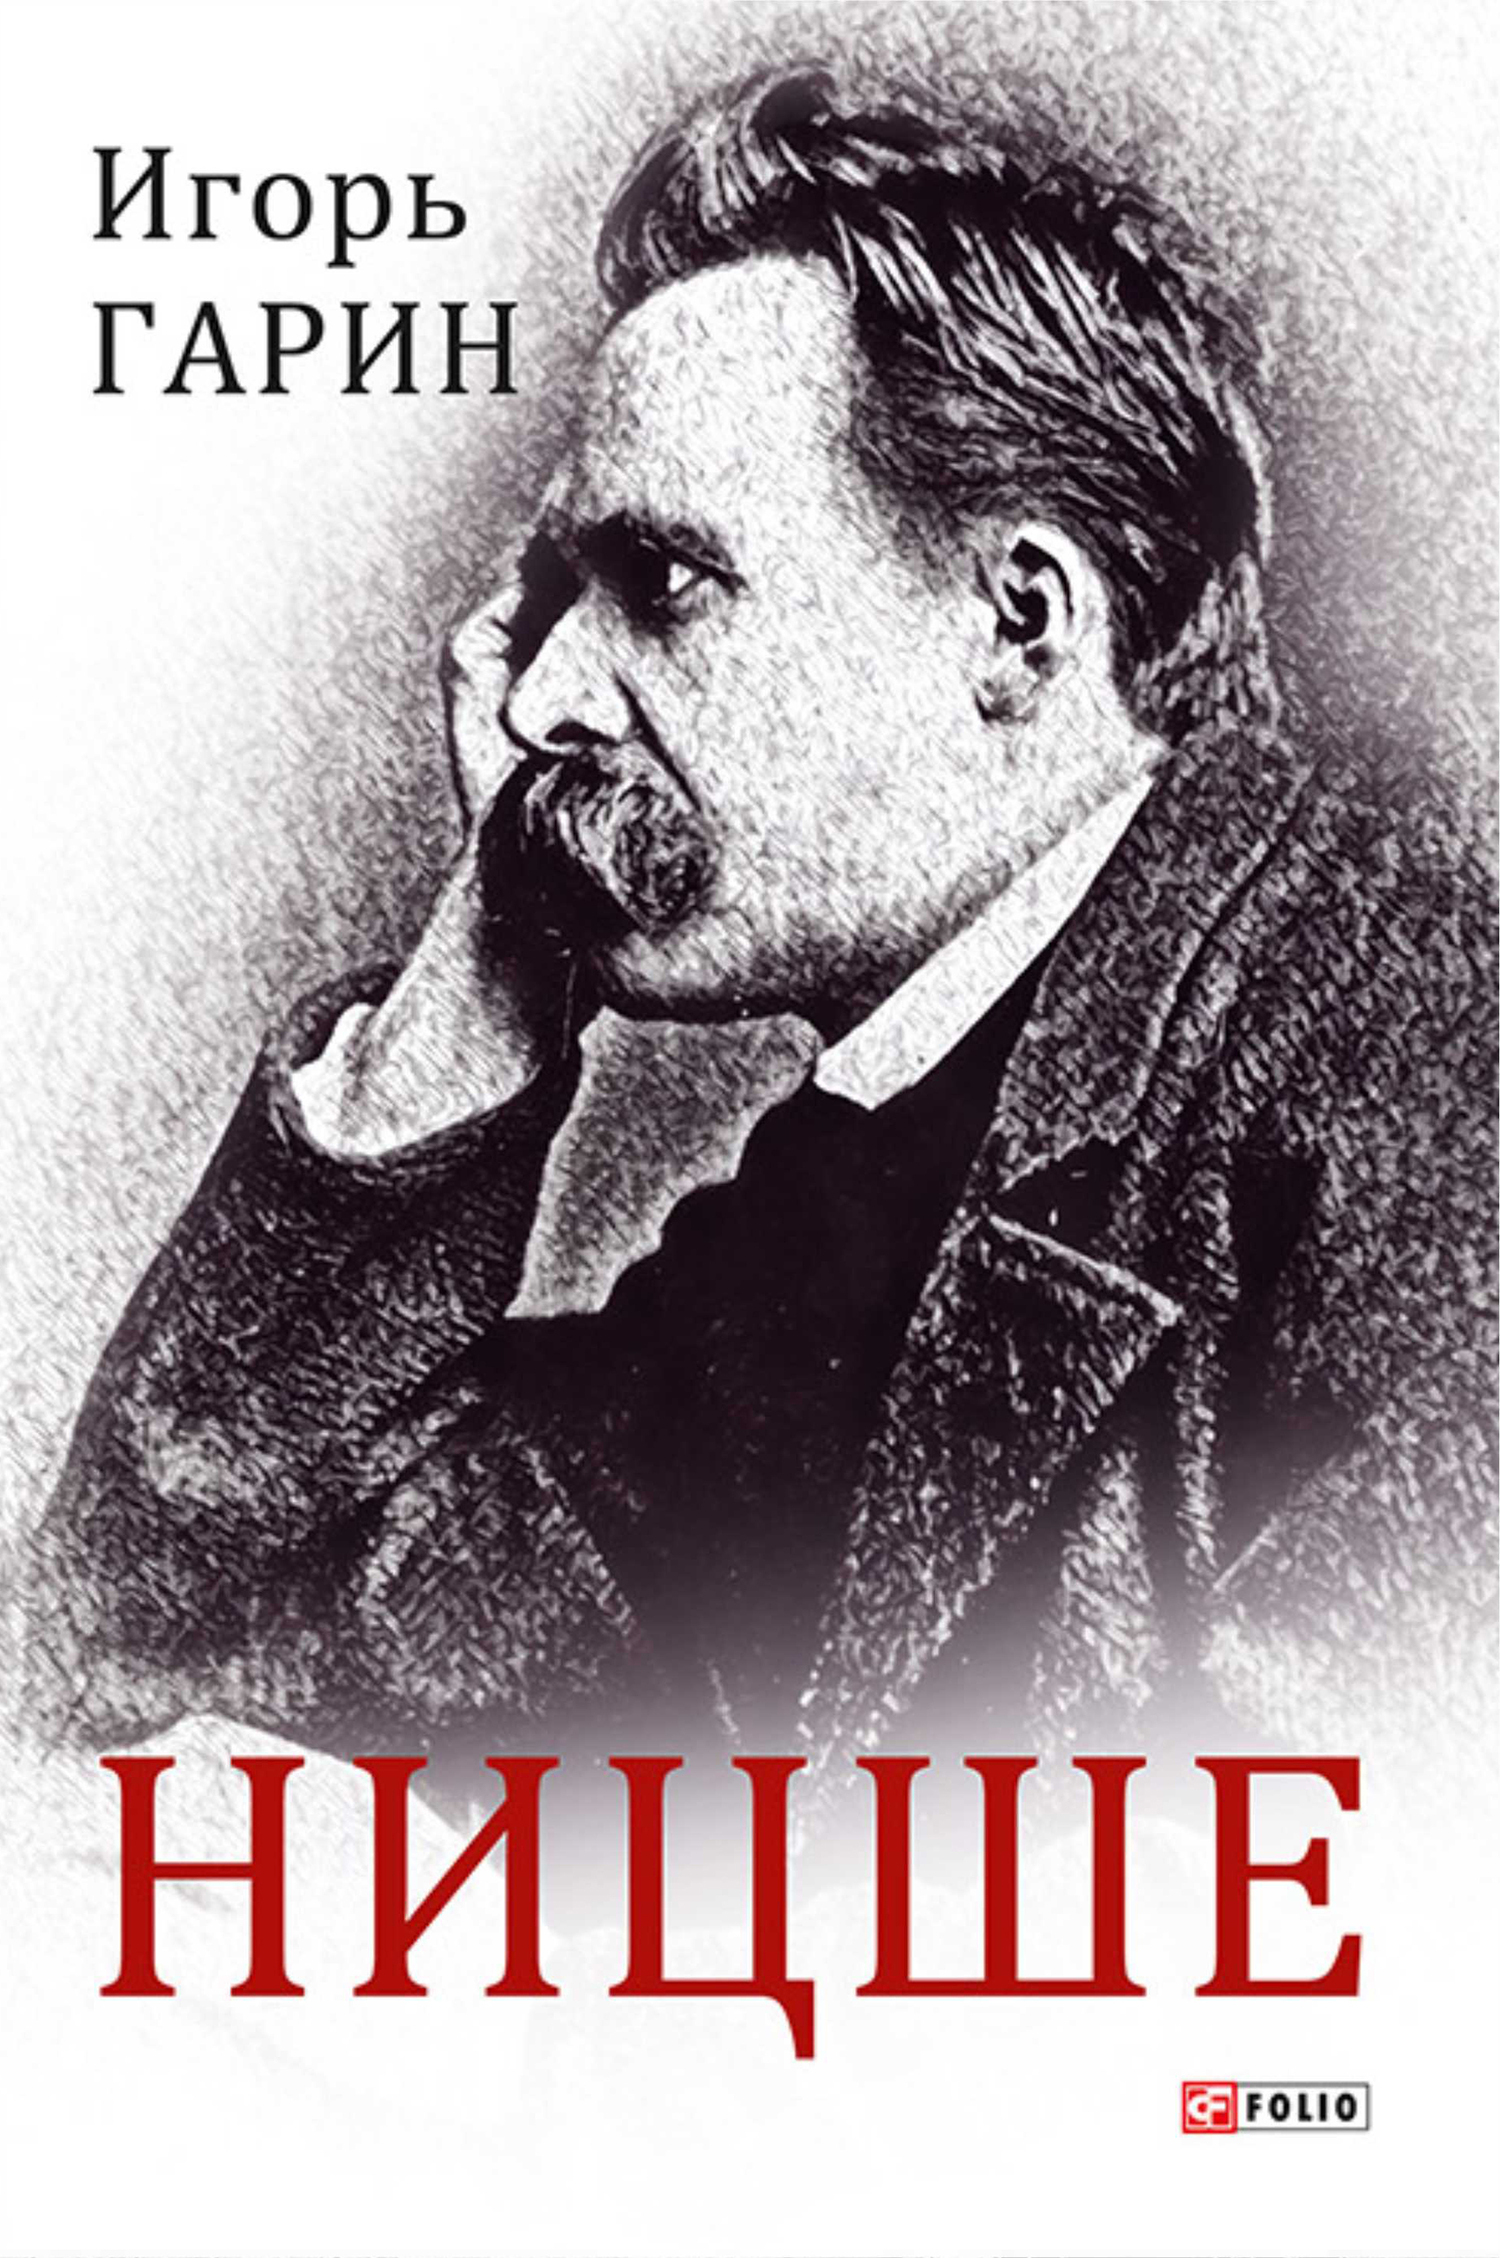 Книга Ницше из серии , созданная Игорь Гарин, может относится к жанру Биографии и Мемуары. Стоимость электронной книги Ницше с идентификатором 51014365 составляет 308.00 руб.